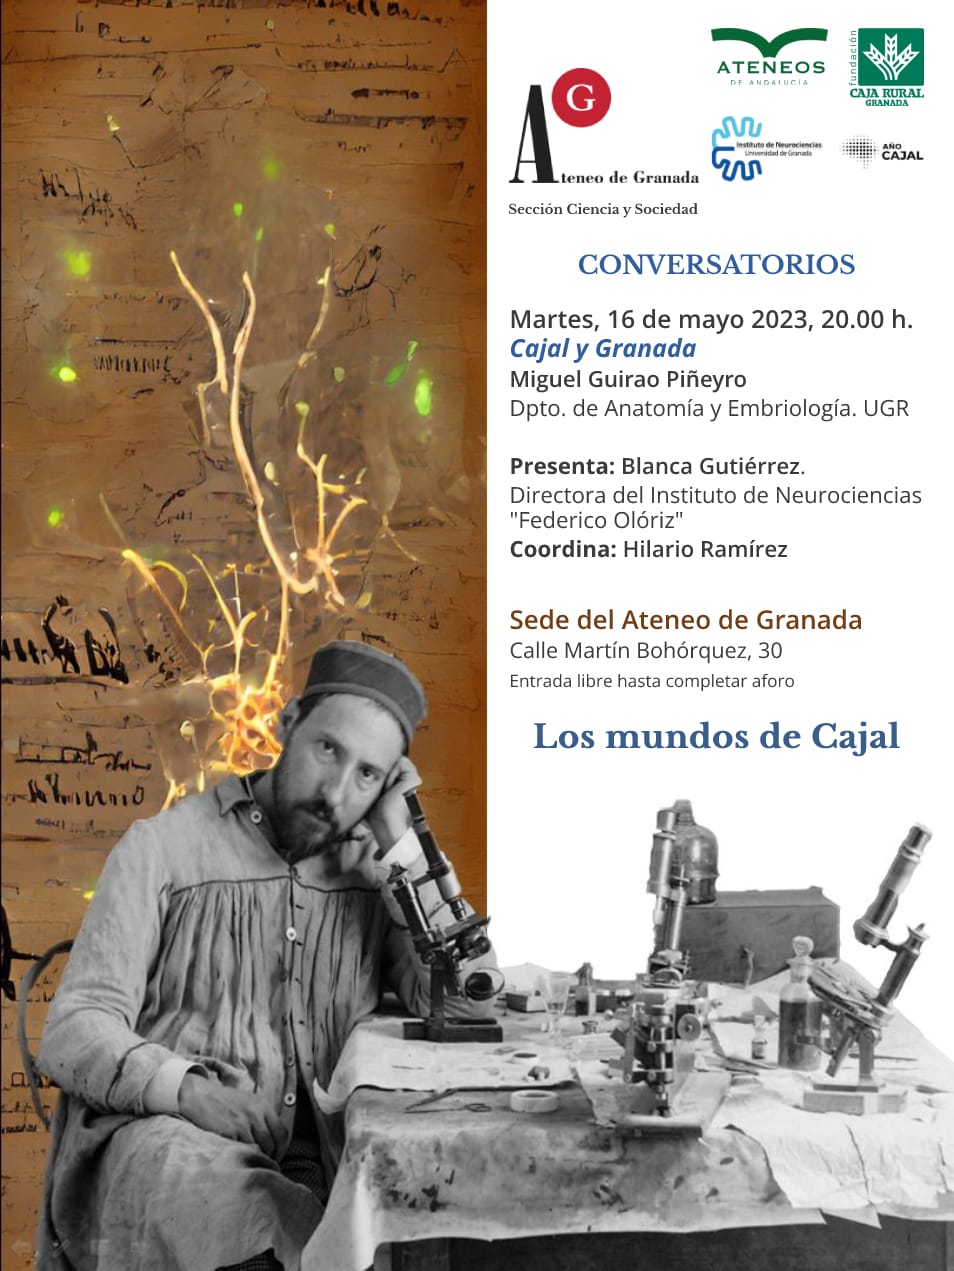 Conversatorios "Los mundos de Cajal"